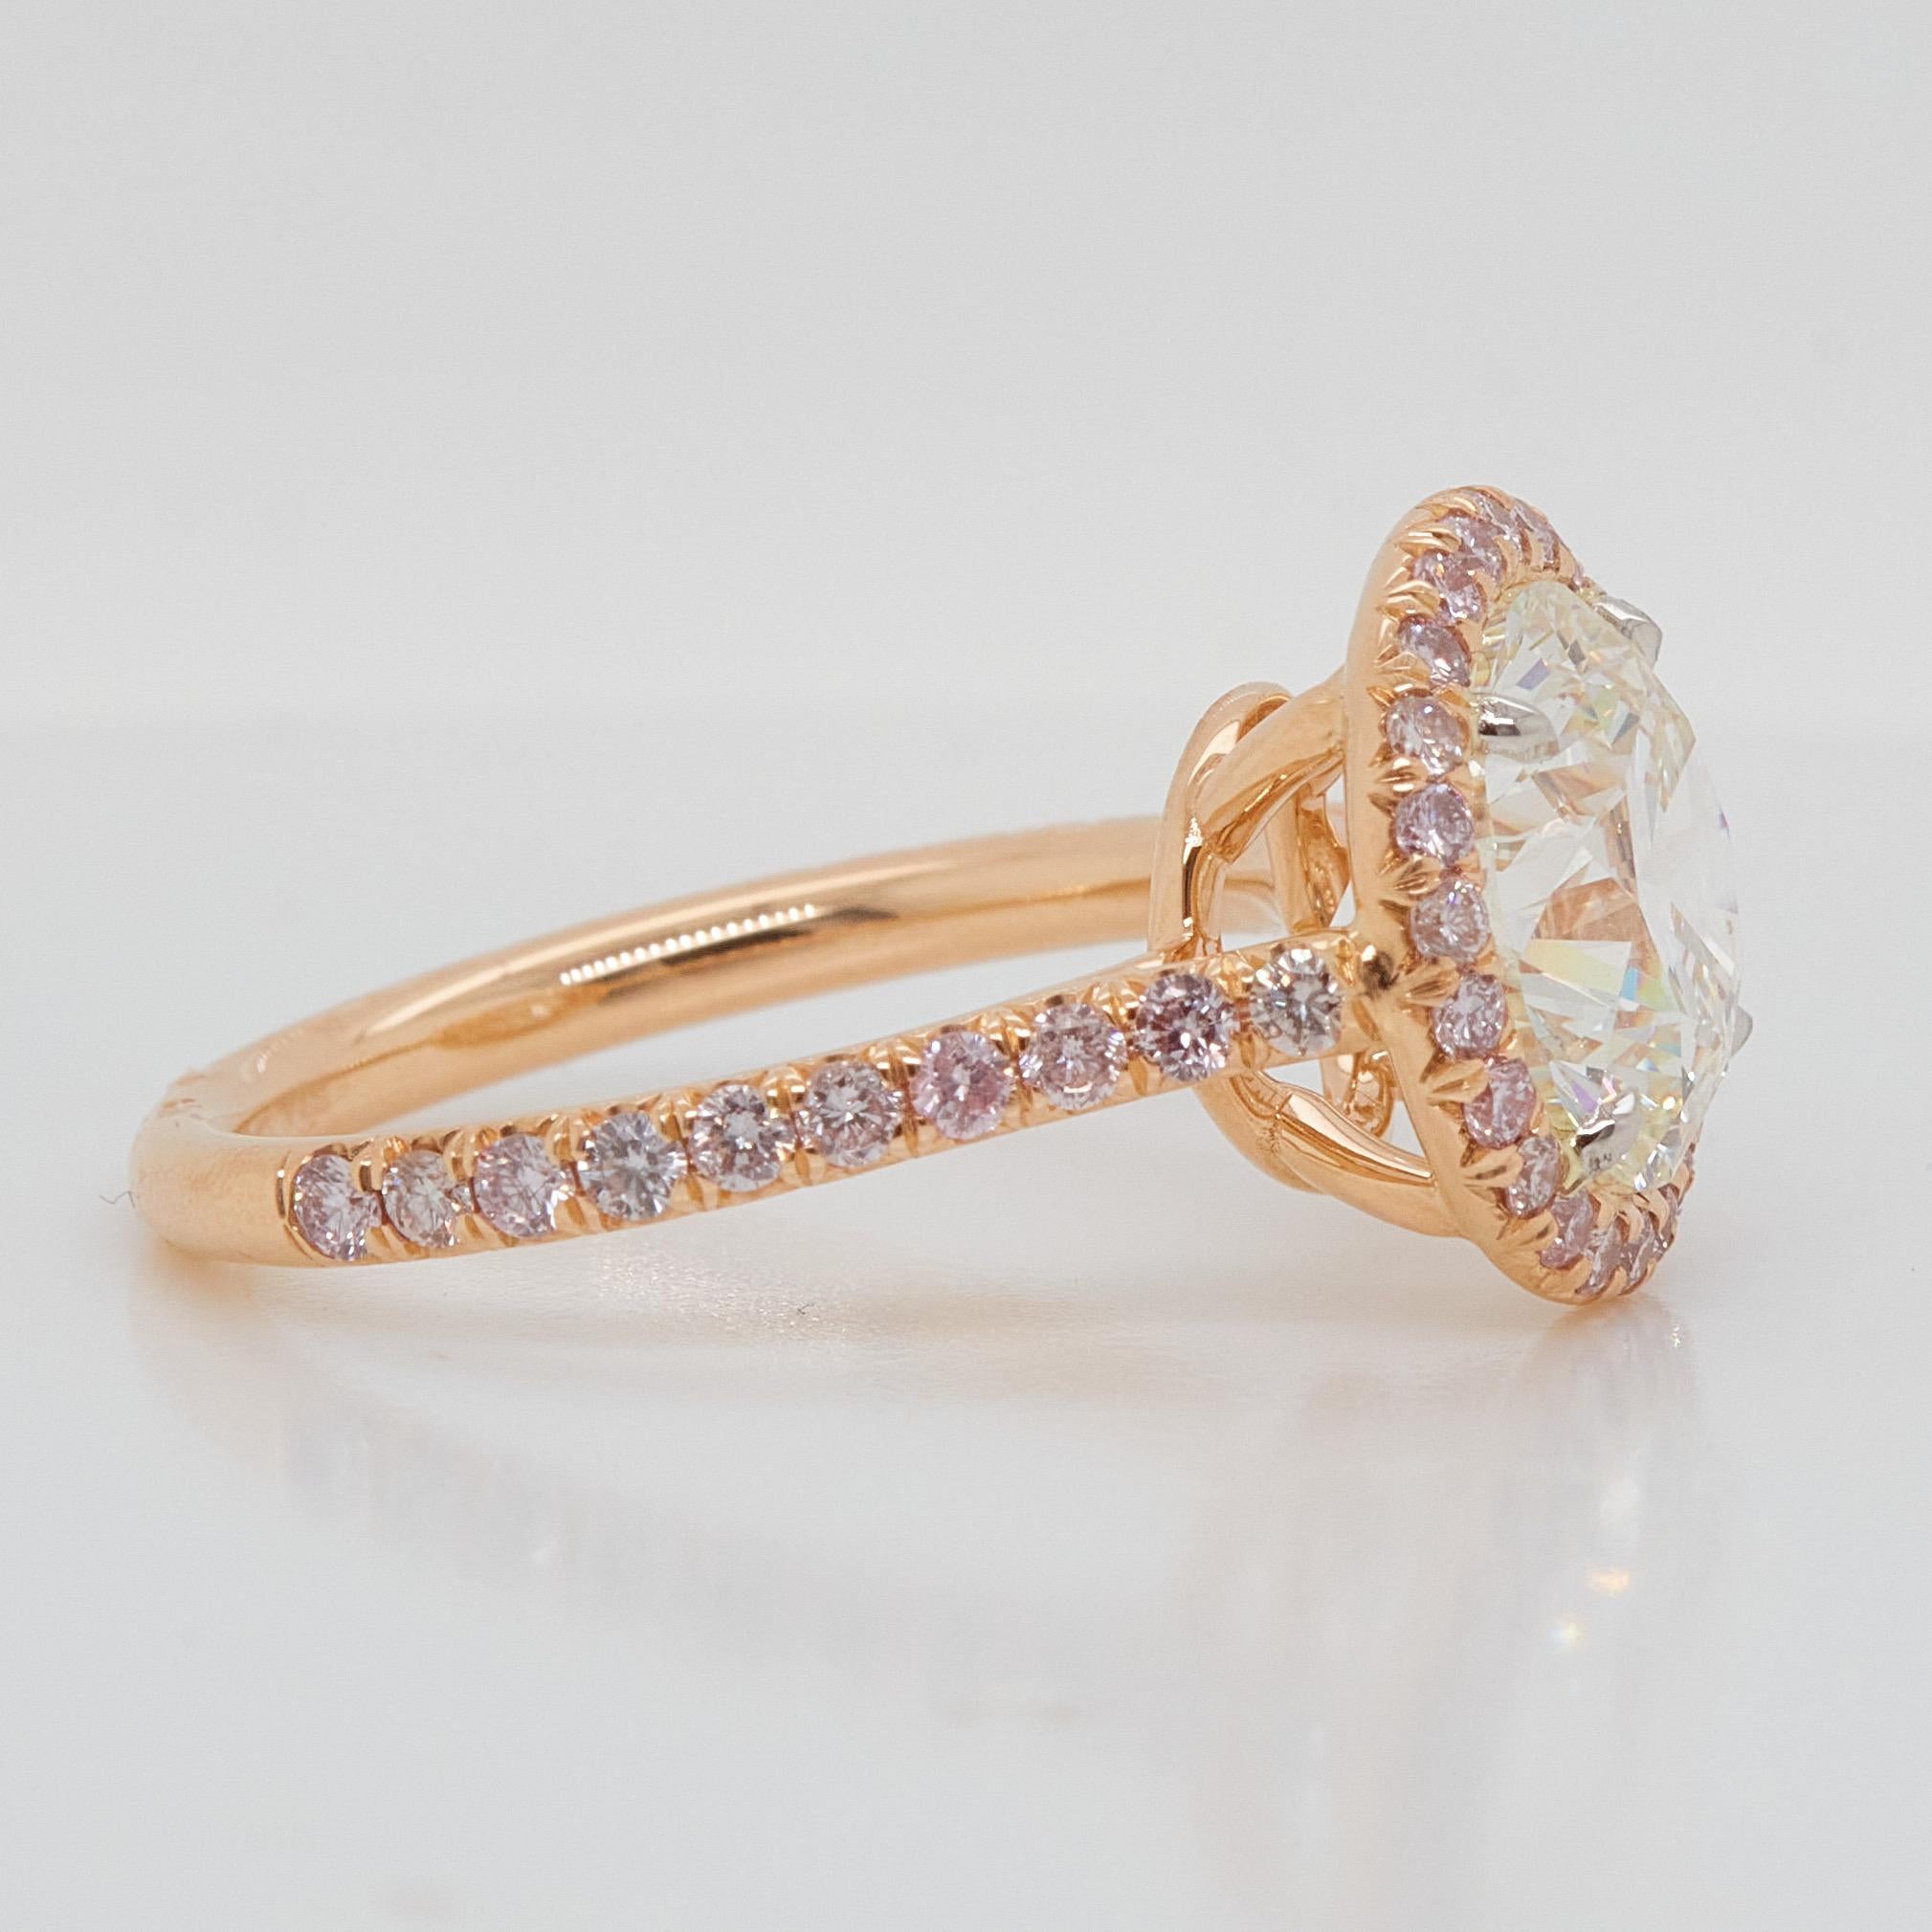 Bague de fiançailles mettant en valeur un diamant de taille coussin de 3,5 carats certifié par le GIA de couleur J et de pureté SI1. Le design classique fait ressortir la beauté de la pierre centrale avec les 44 diamants roses ronds qui l'entourent,